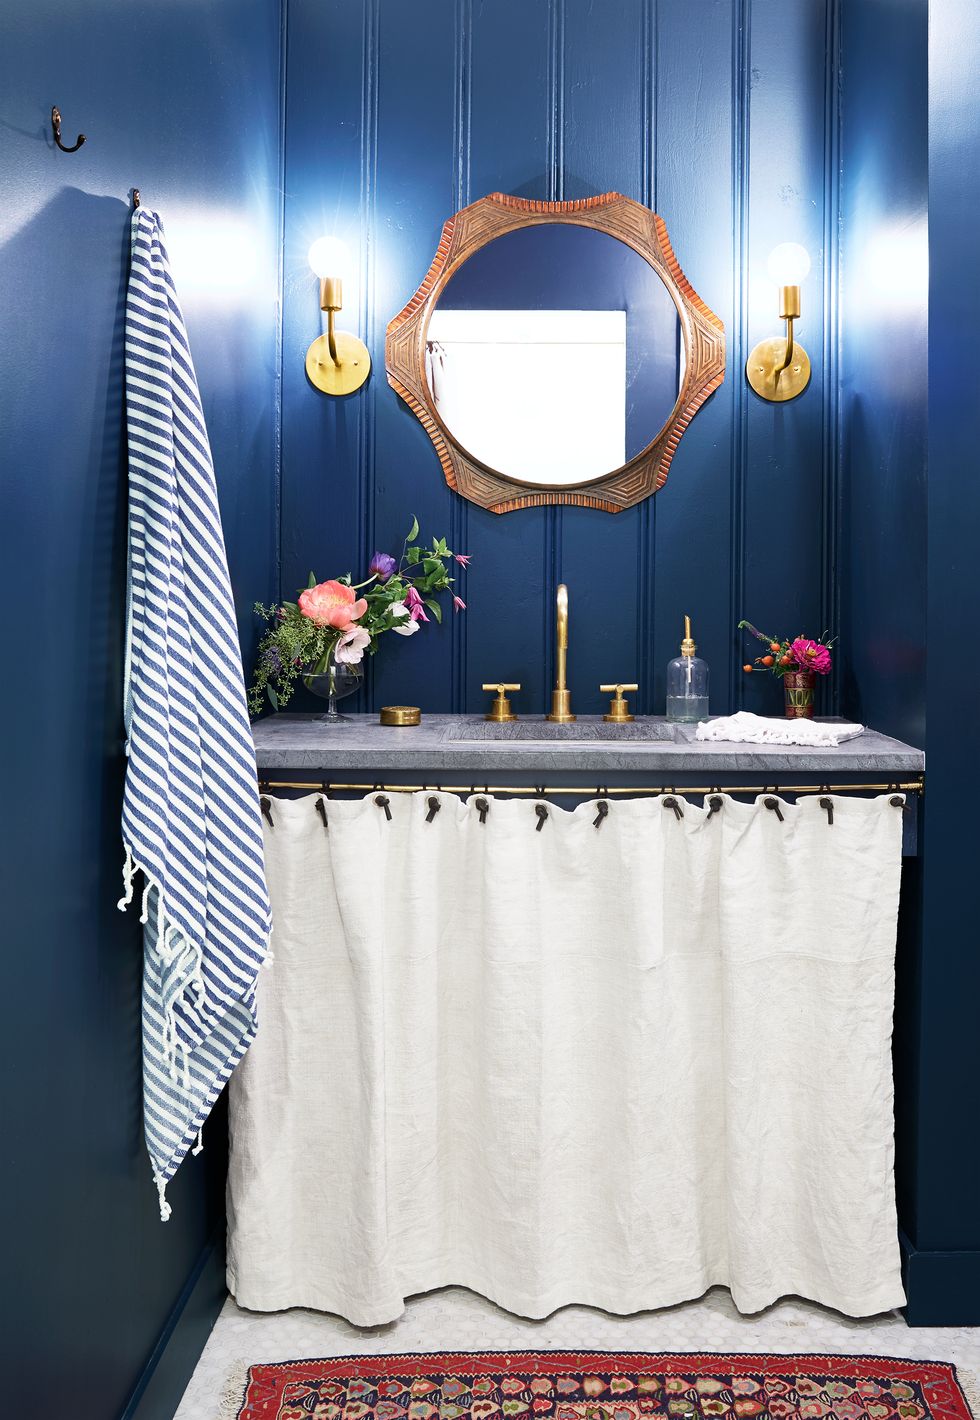 Hình ảnh phòng tắm với tường sơn màu xanh đậm, rèm vải màu trắng, thảm trải thổ cẩm, khung gương gỗ